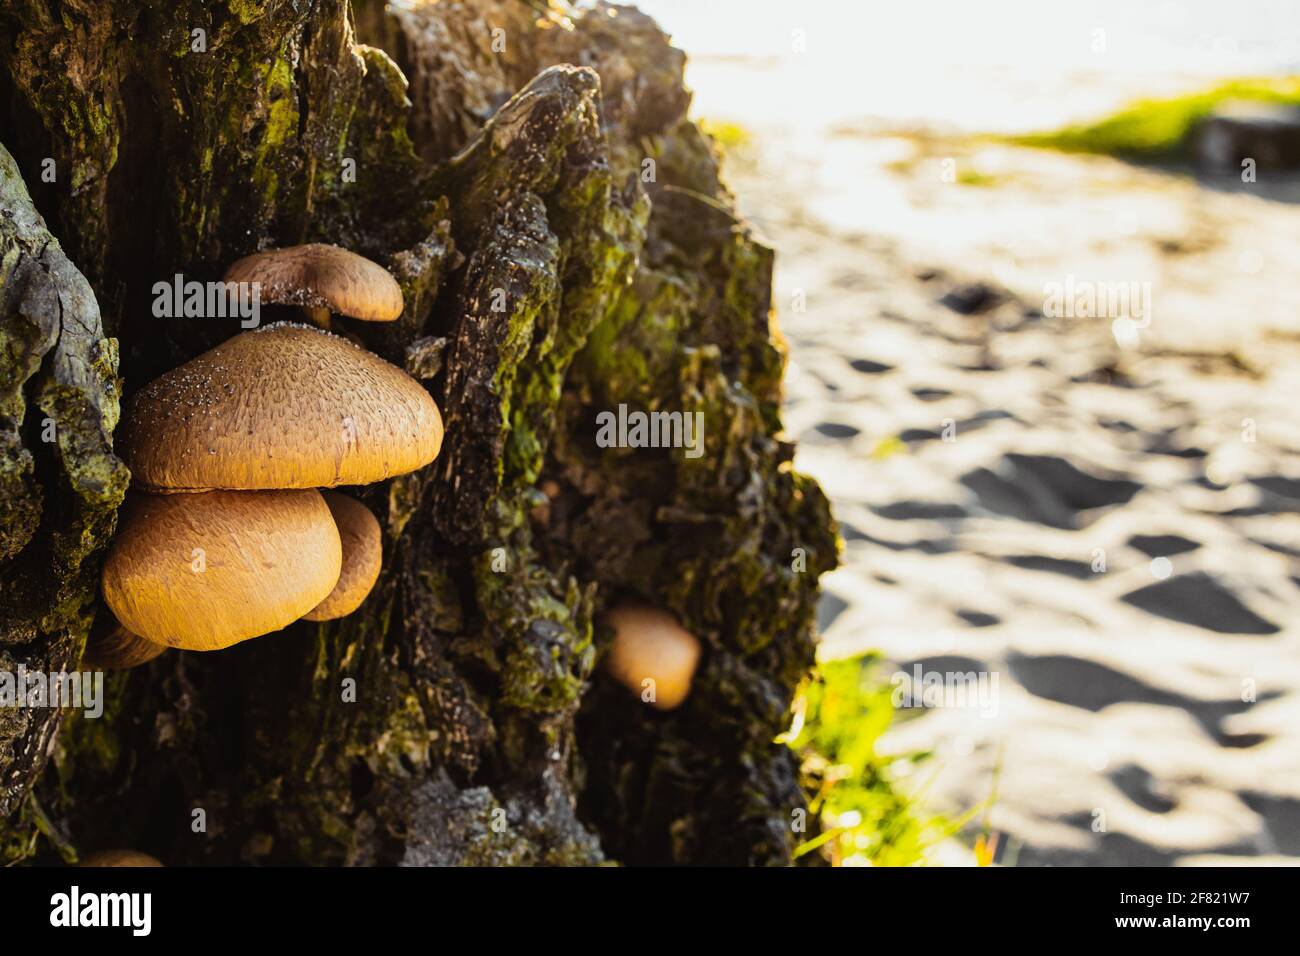 Eine Nahaufnahme von Pilzen, die zu einem geschnittenen Baum gewachsen sind Stamm an einem weißen Sandstrand mit goldenem Sonnenlicht Stockfoto